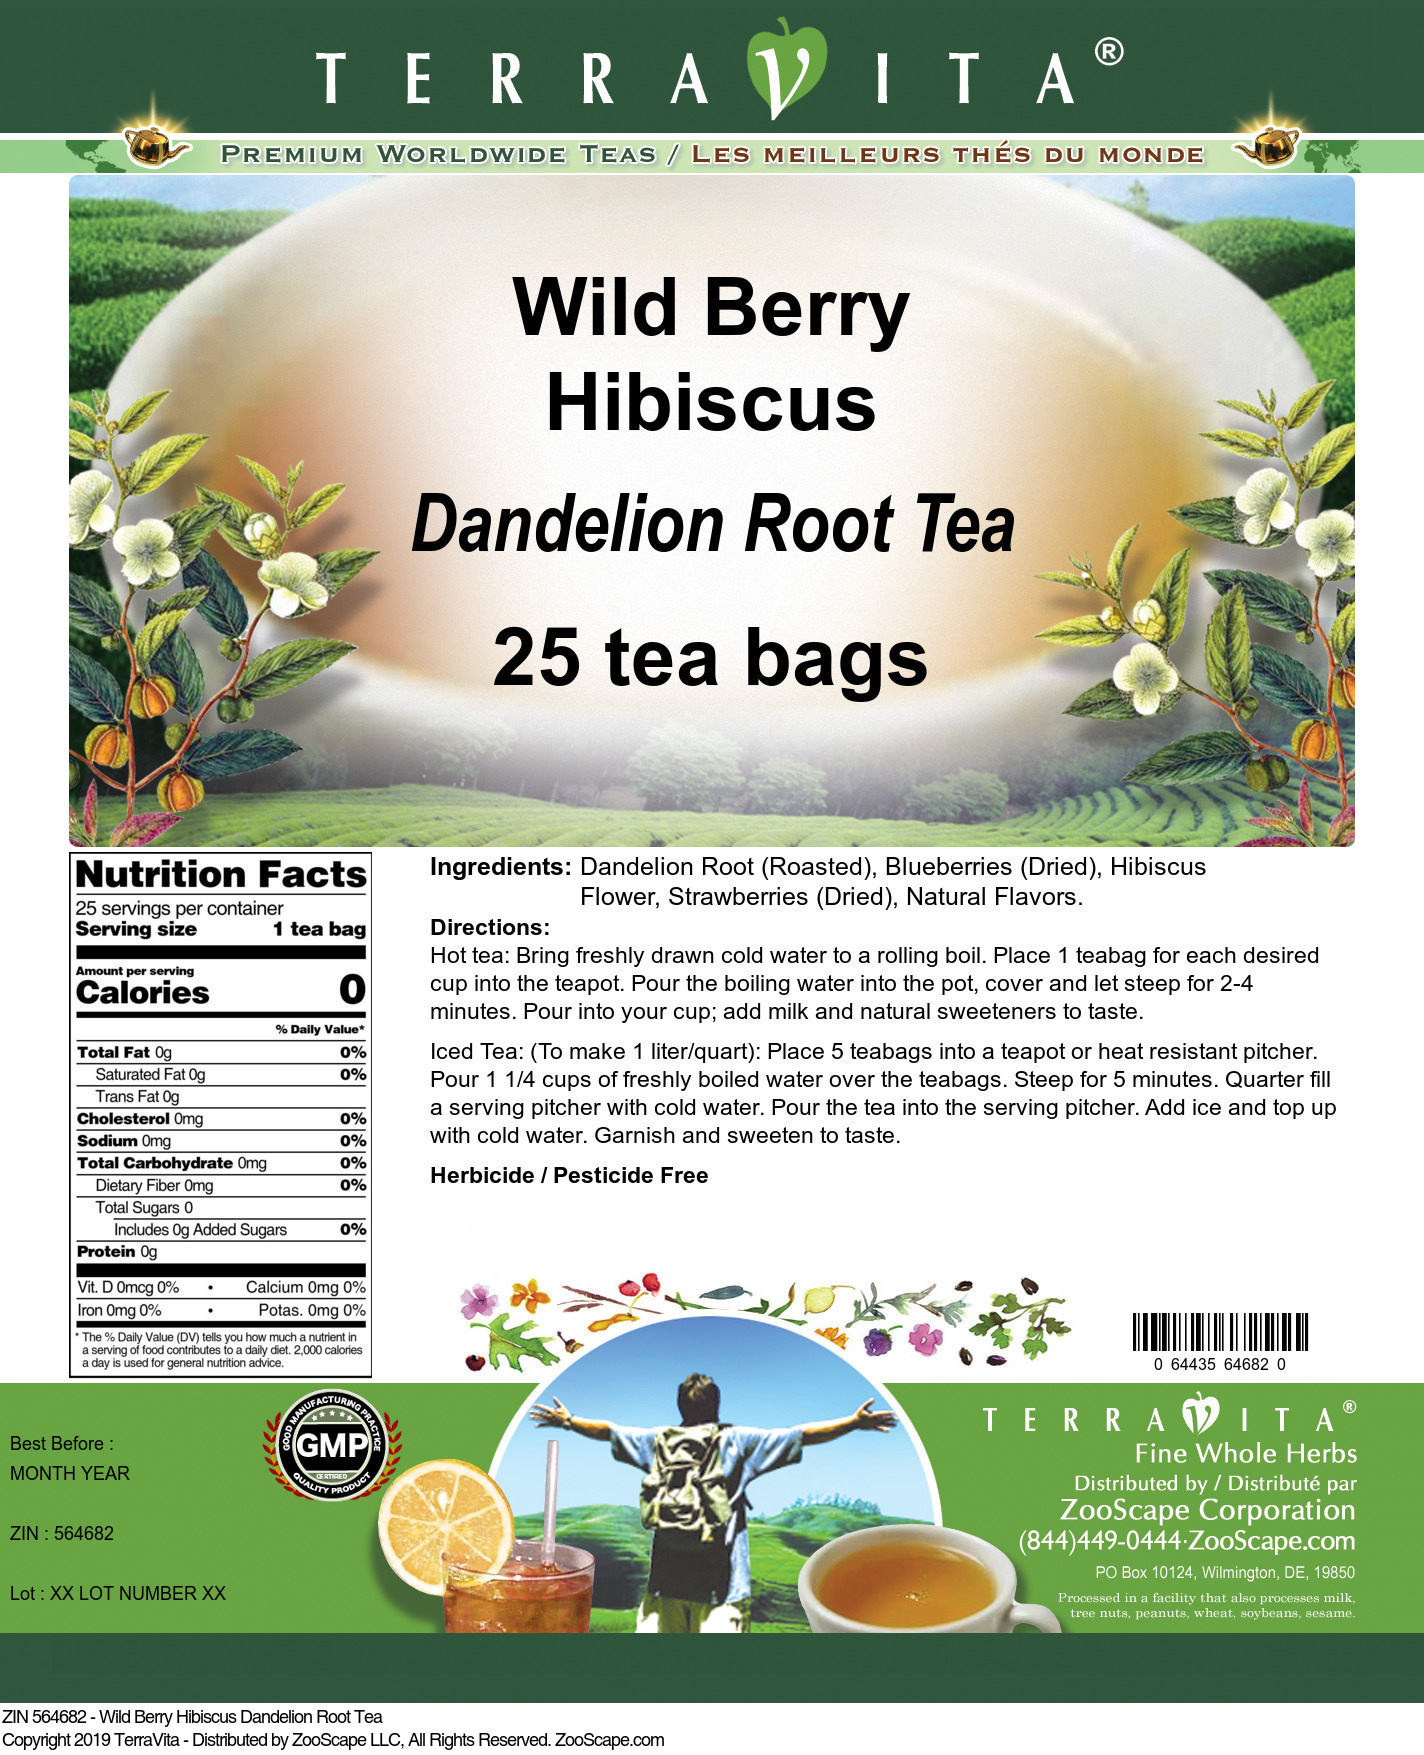 Wild Berry Hibiscus Dandelion Root Tea - Label